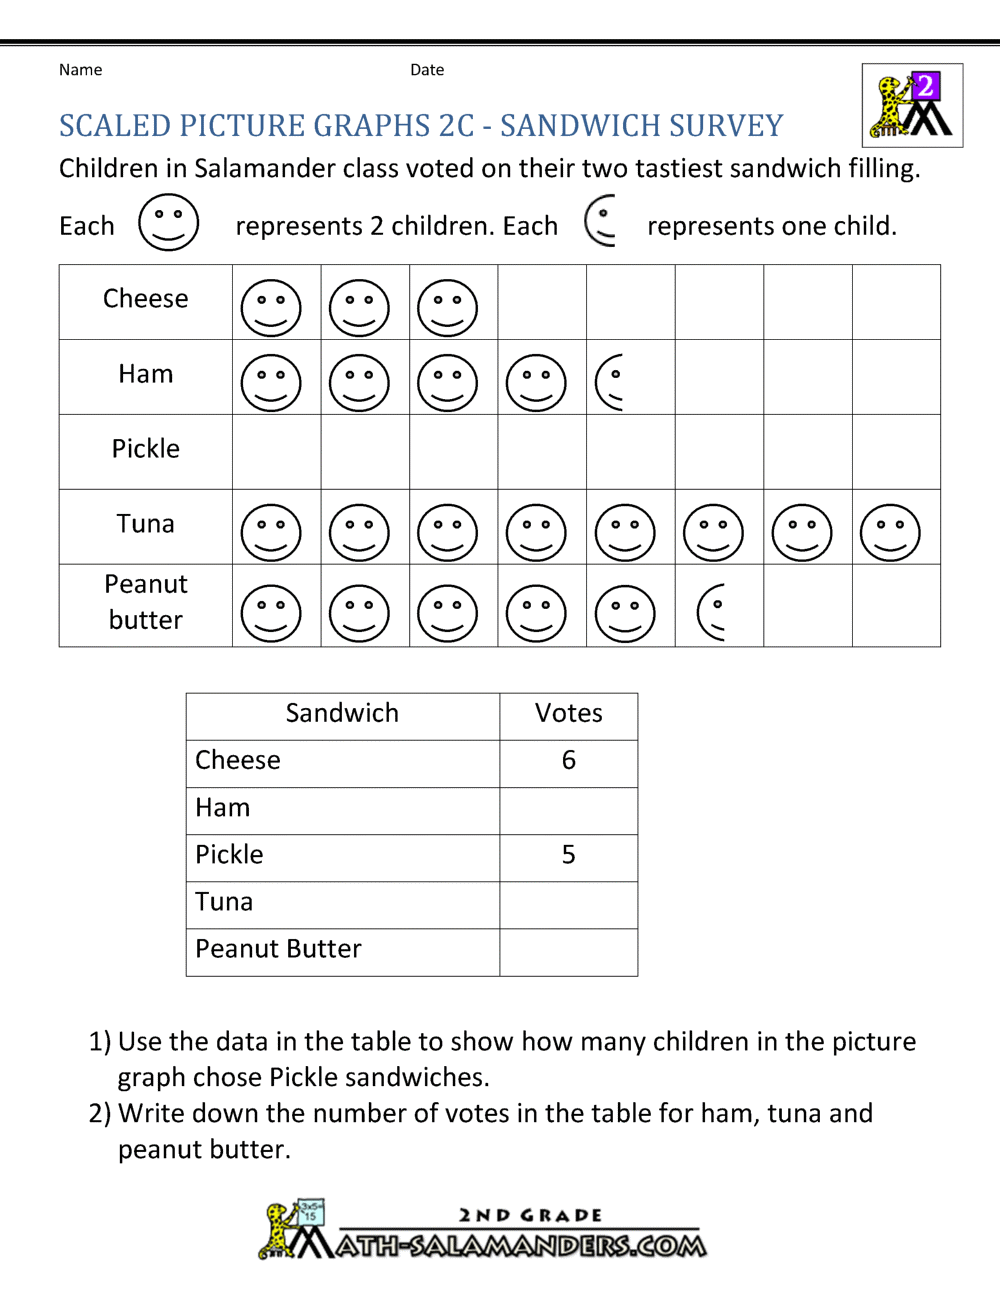 bar-graphs-2nd-grade